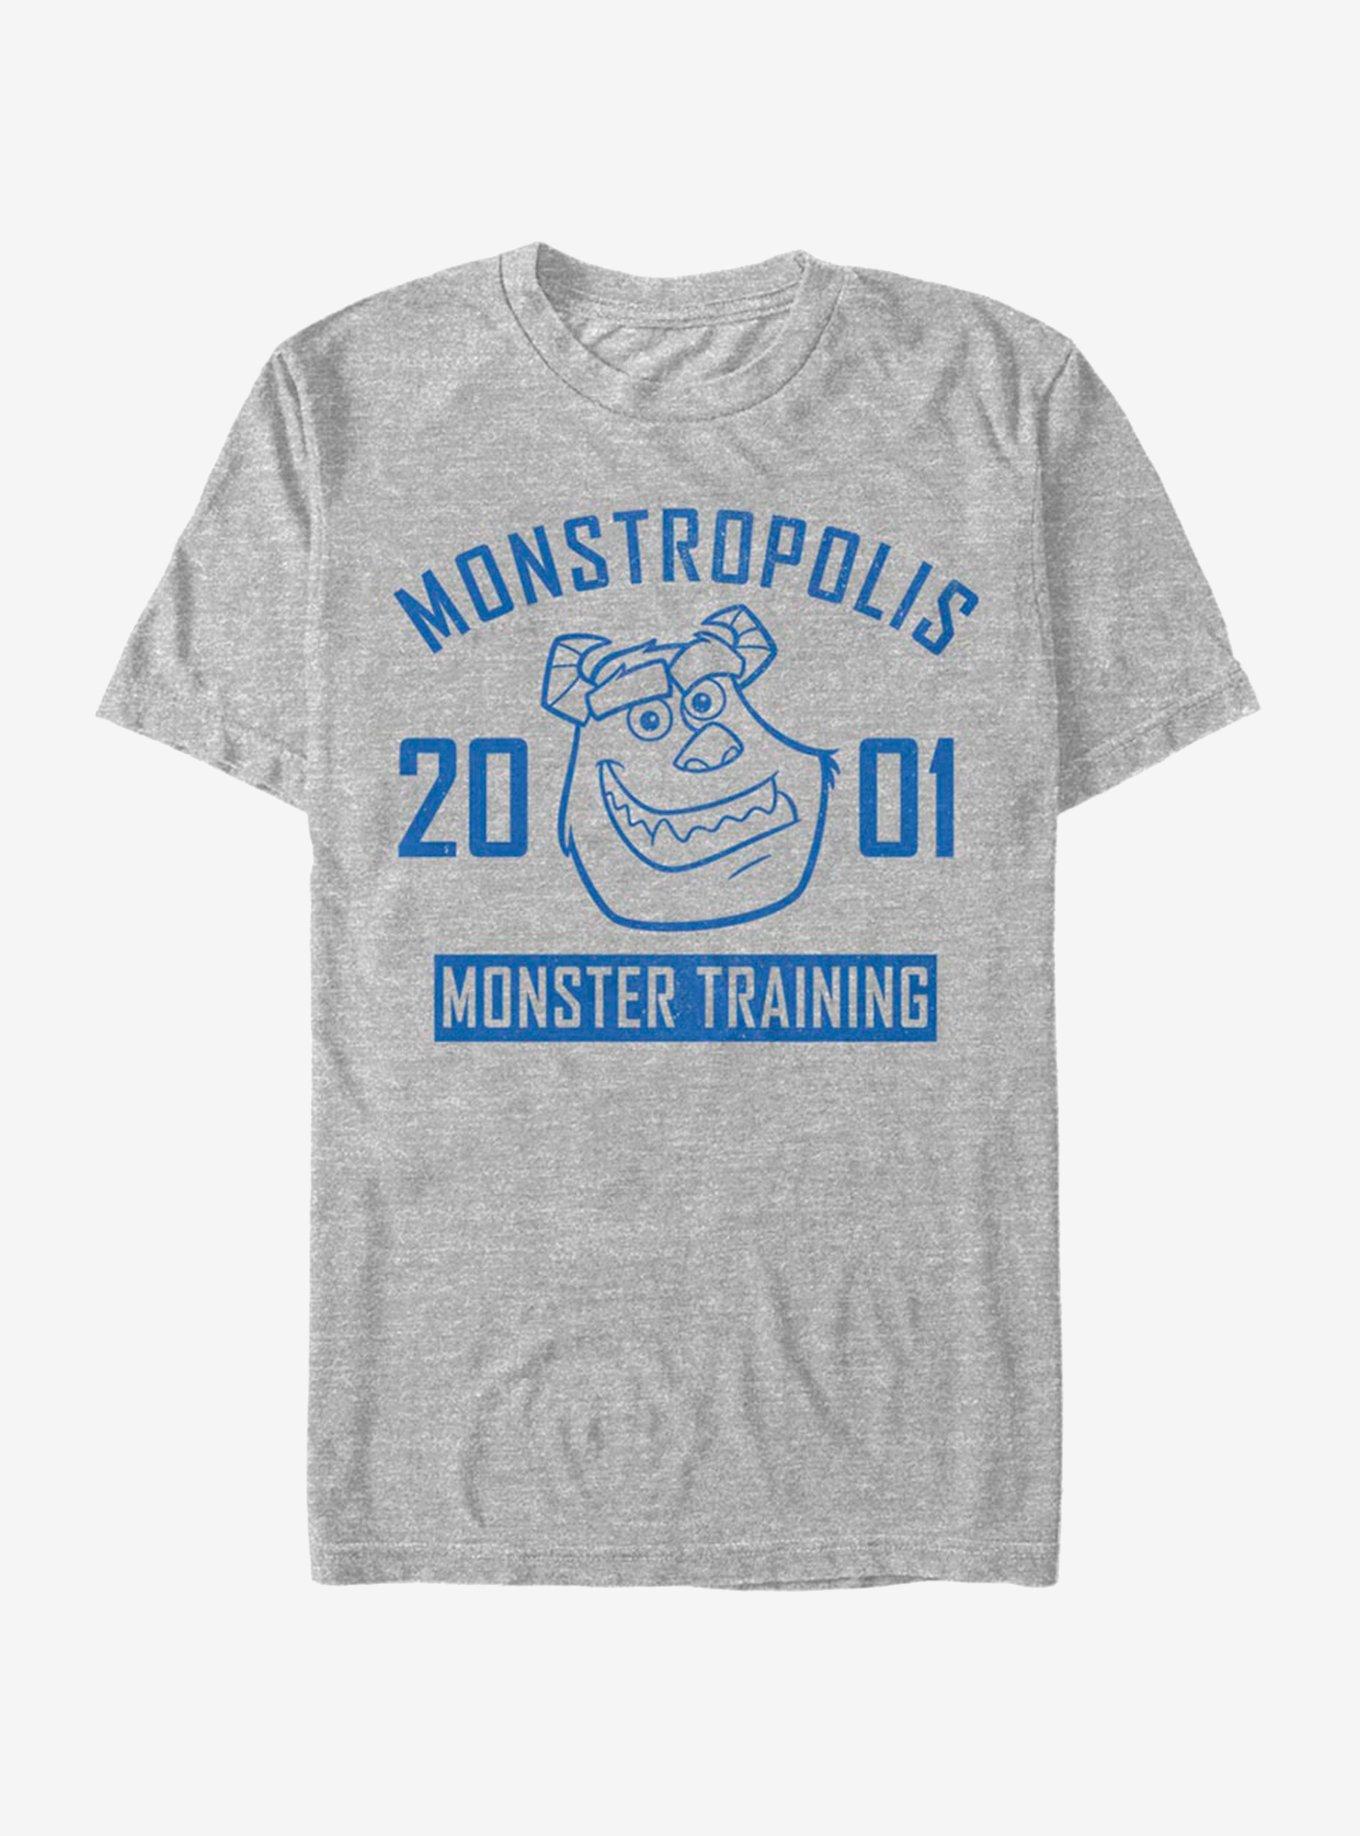 Disney Pixar Monsters University Monster Training T-Shirt